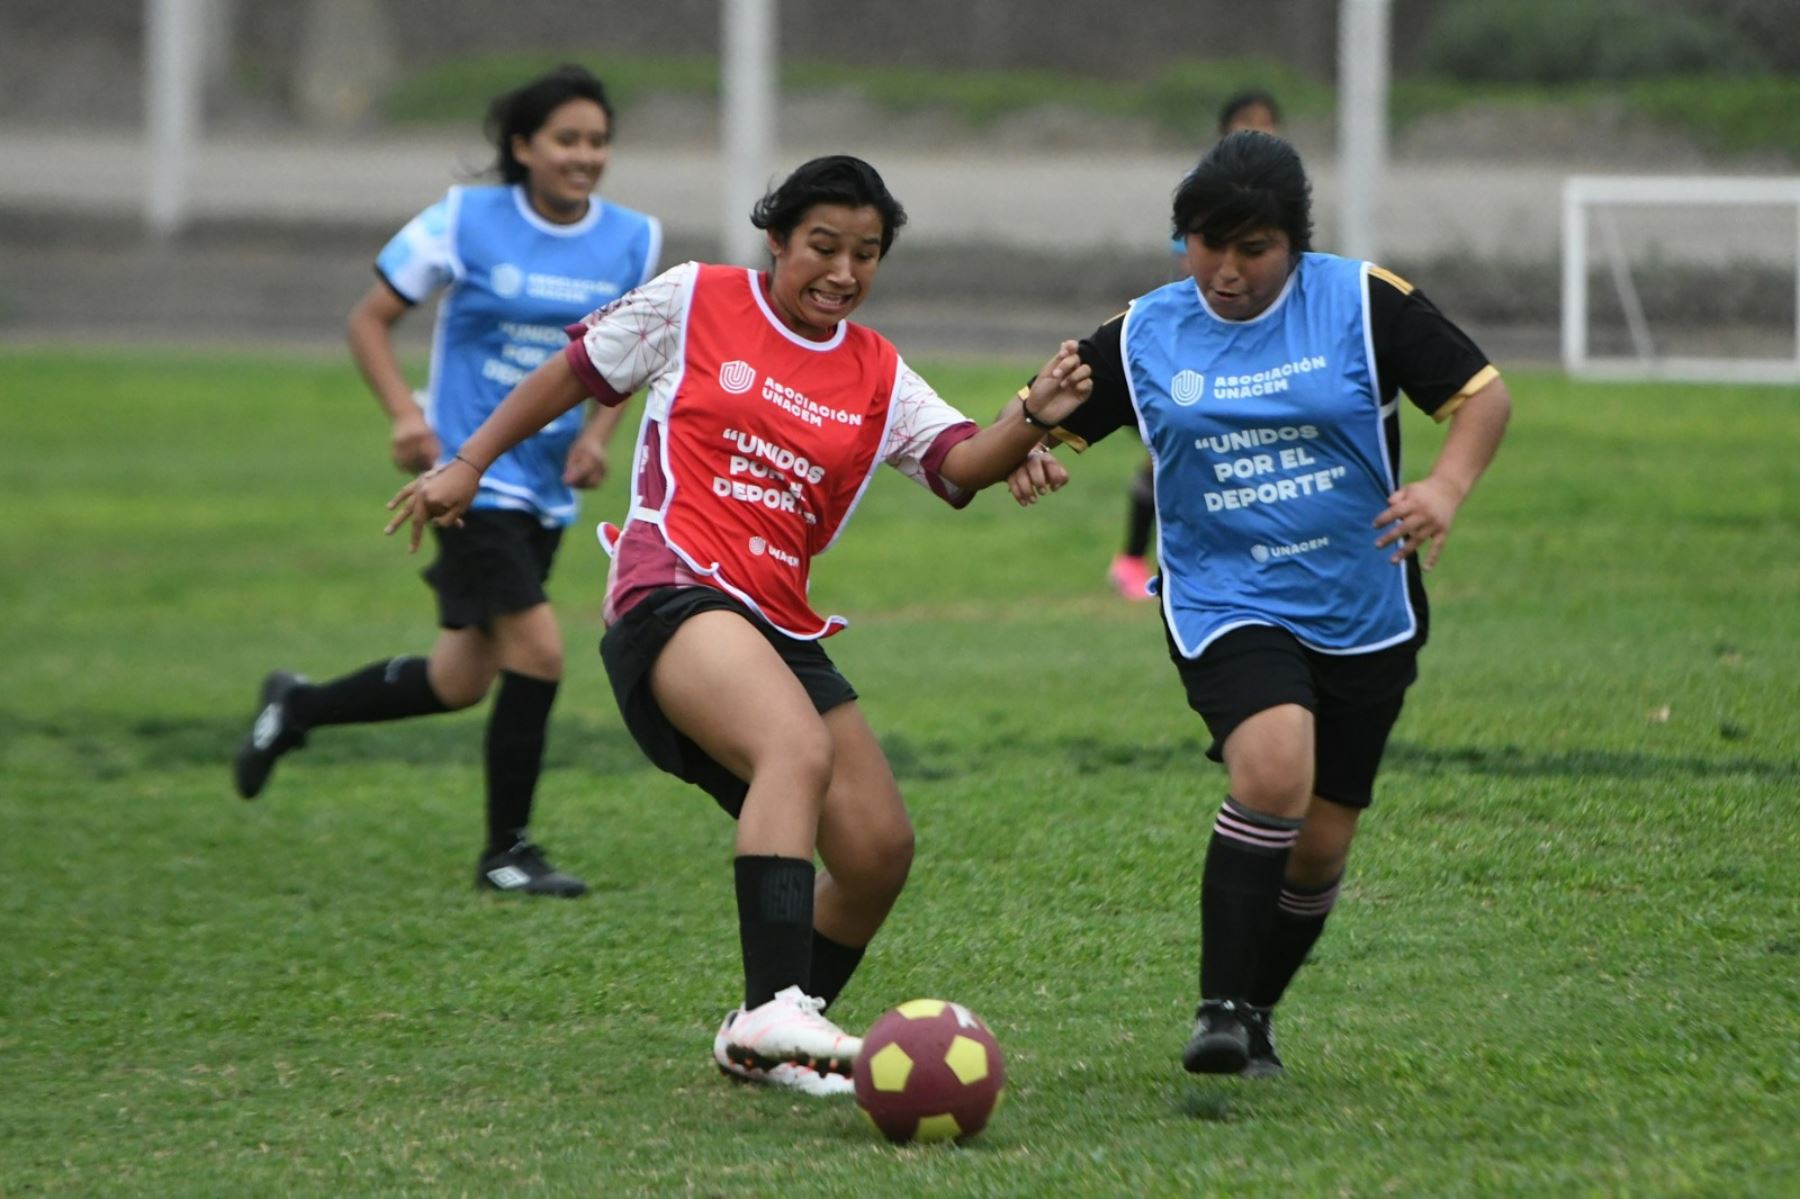 La juventud femenina tiene la oportunidad de perseguir sus sueños de ser futbolistas en el sur de Lima